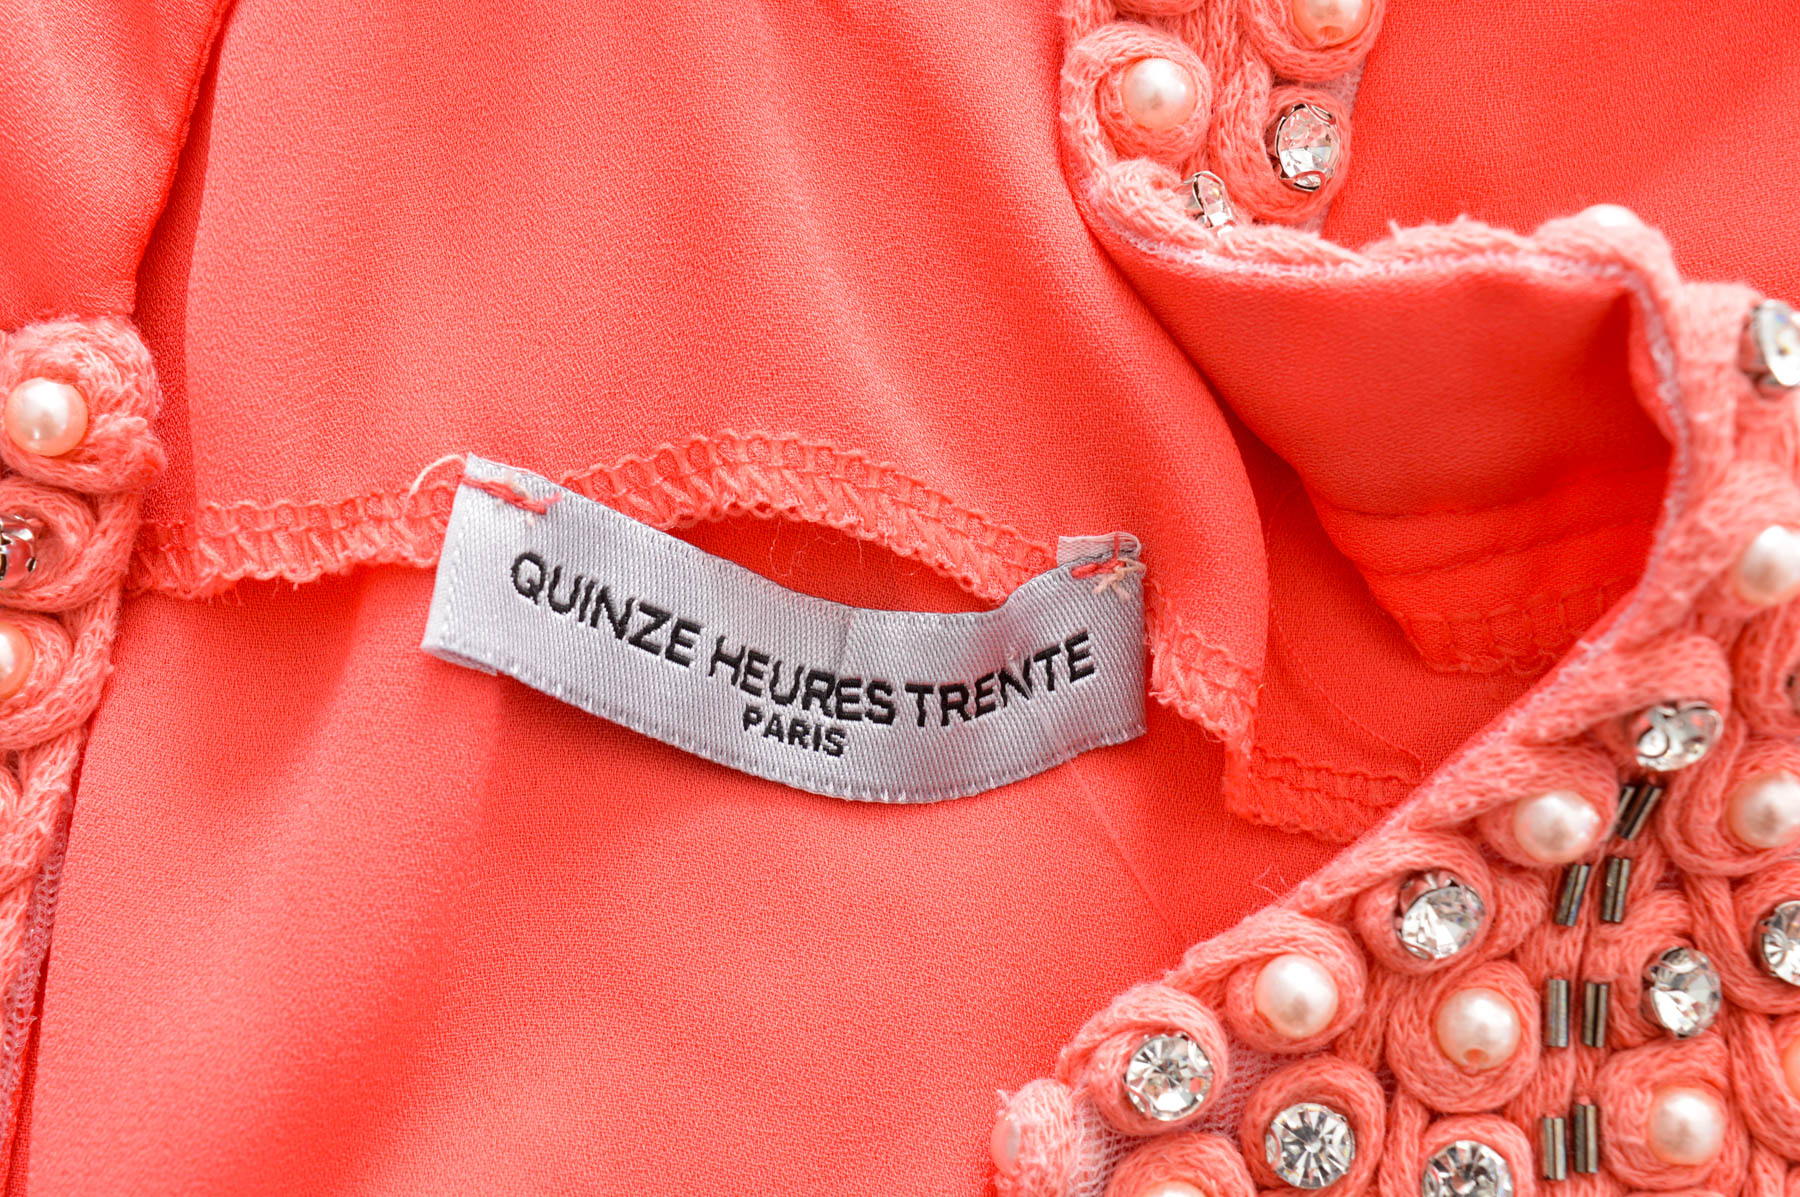 Γυναικείο πουκάμισο - Quinze Heures Trente - 2